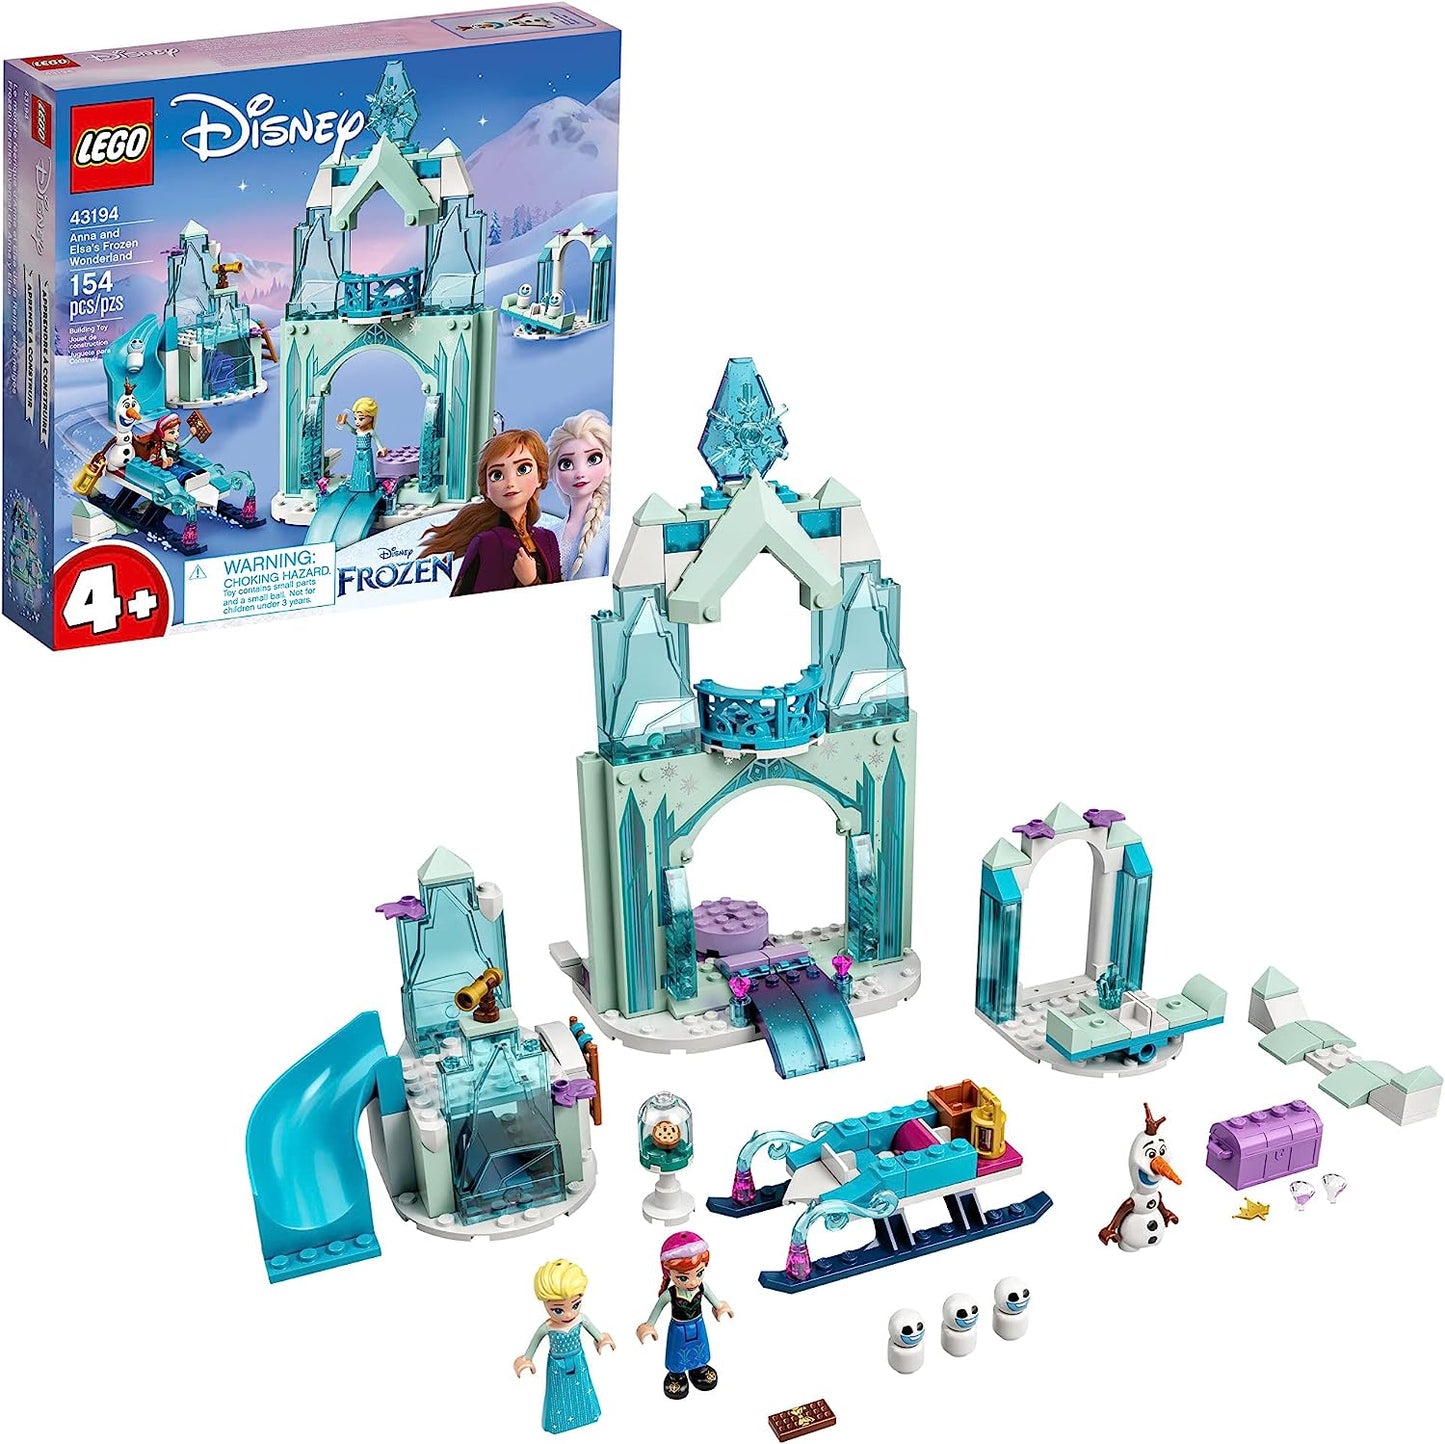 43194 Disney: Anna and Elsa’s Frozen Wonderland - CERTIFIED